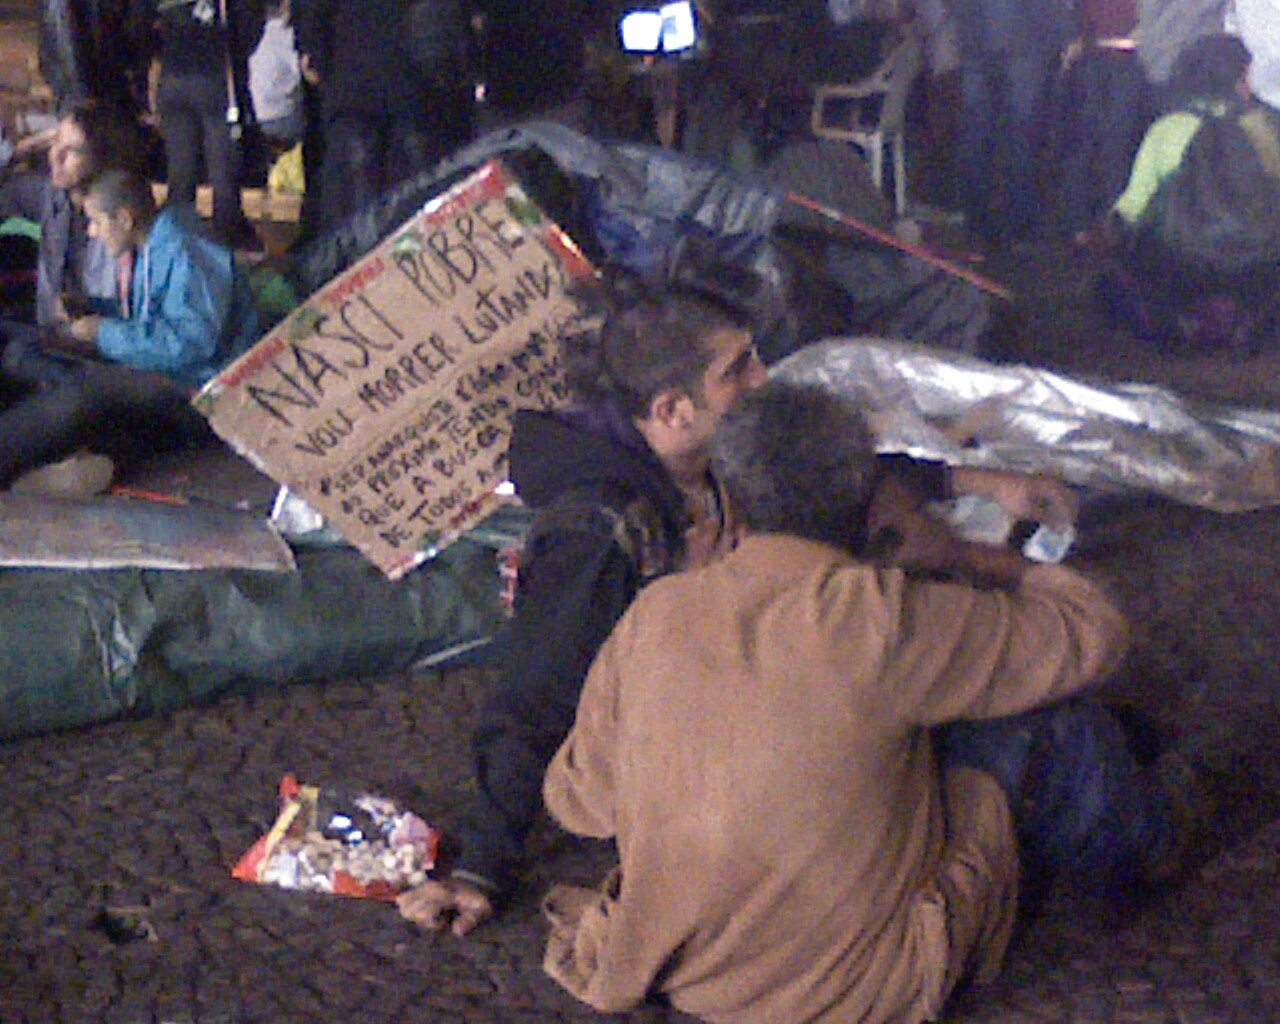 “nasci pobre, vou morrer lutando” #AcampaSampa #15O